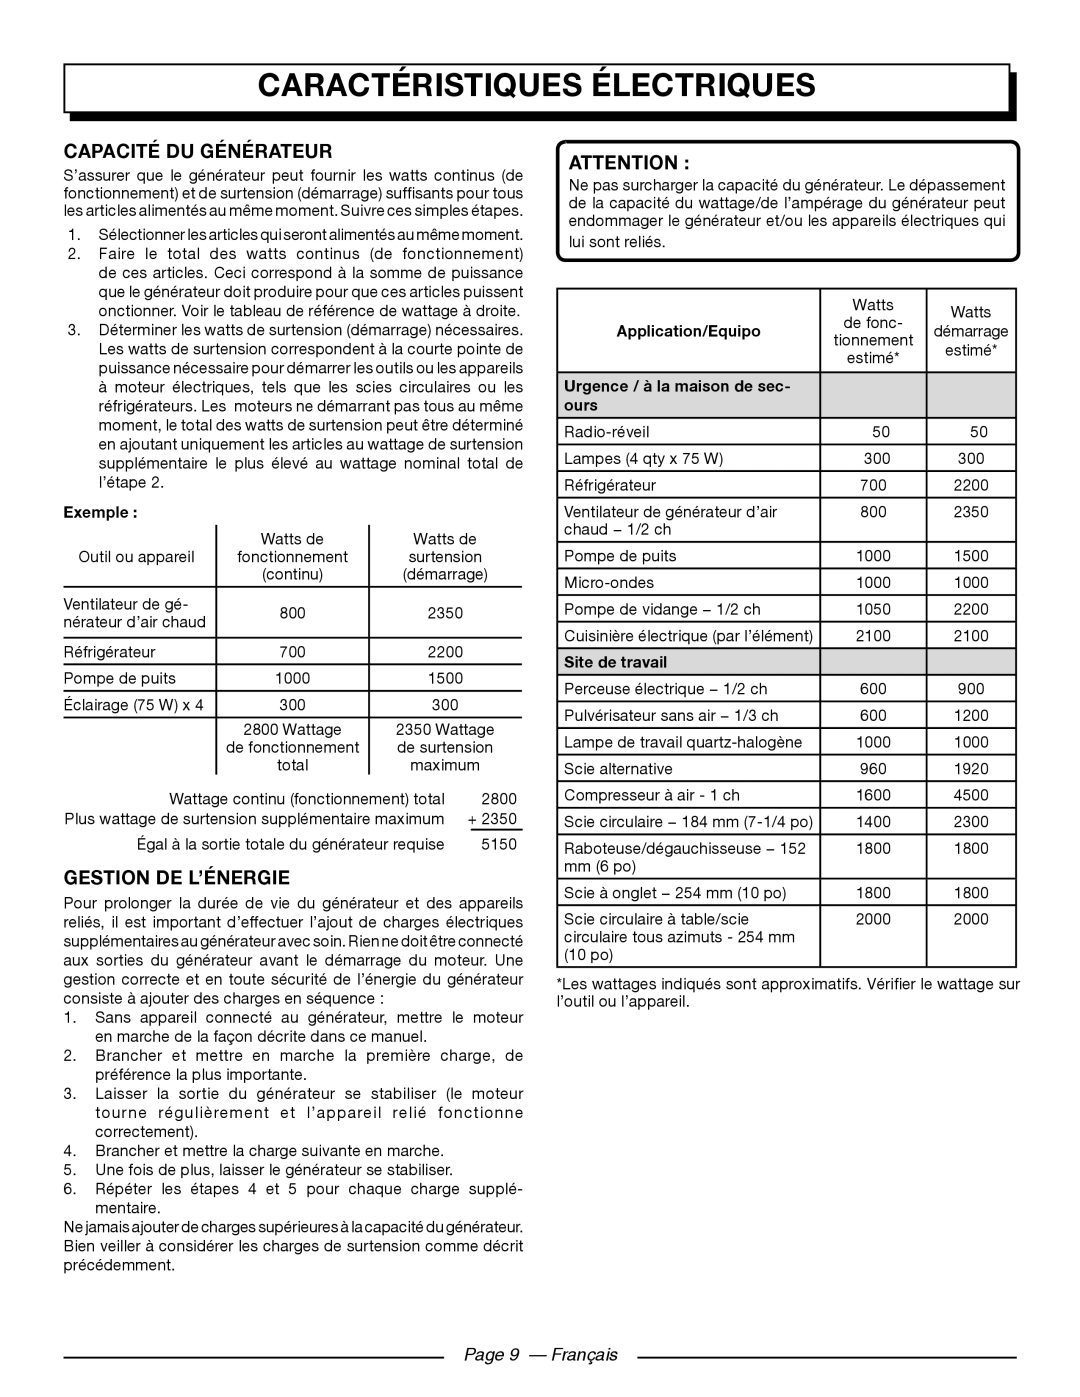 Homelite UT902250 Capacité Du Générateur, Gestion De L’Énergie, Page 9 — Français, Caractéristiques Électriques 